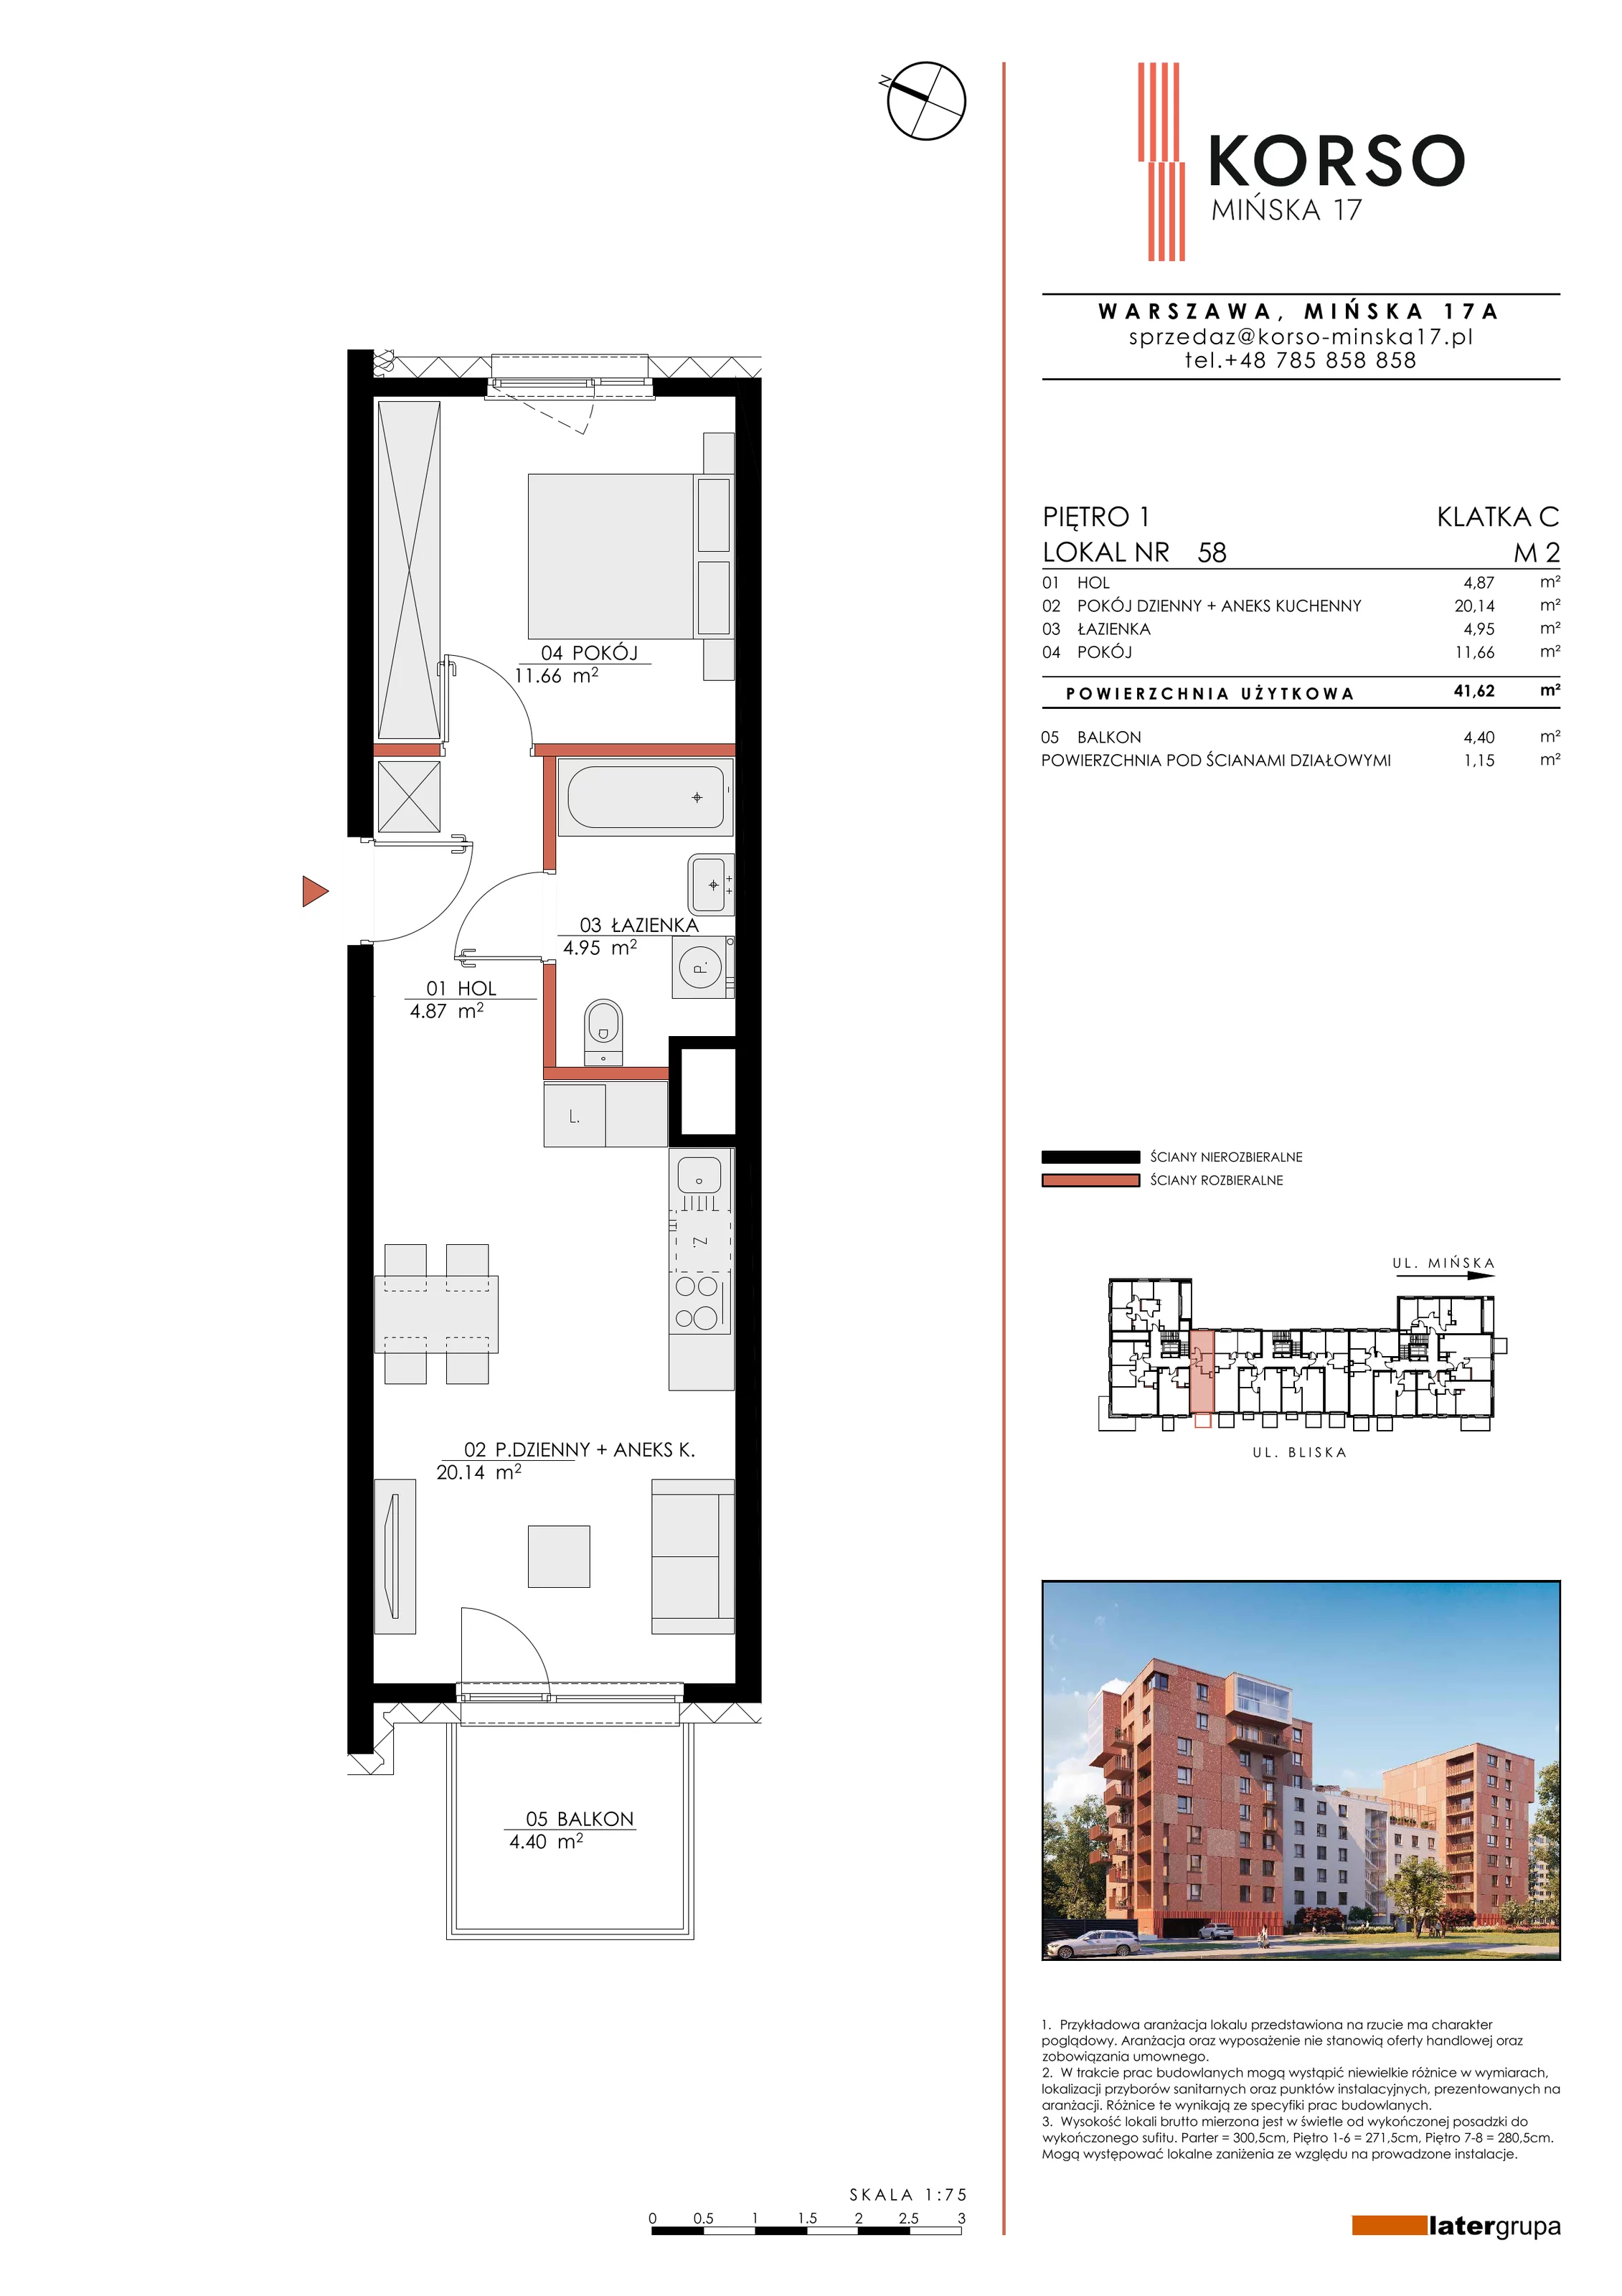 Mieszkanie 41,62 m², piętro 1, oferta nr 58, KORSO Mińska 17, Warszawa, Praga Południe, Kamionek, ul. Mińska 17